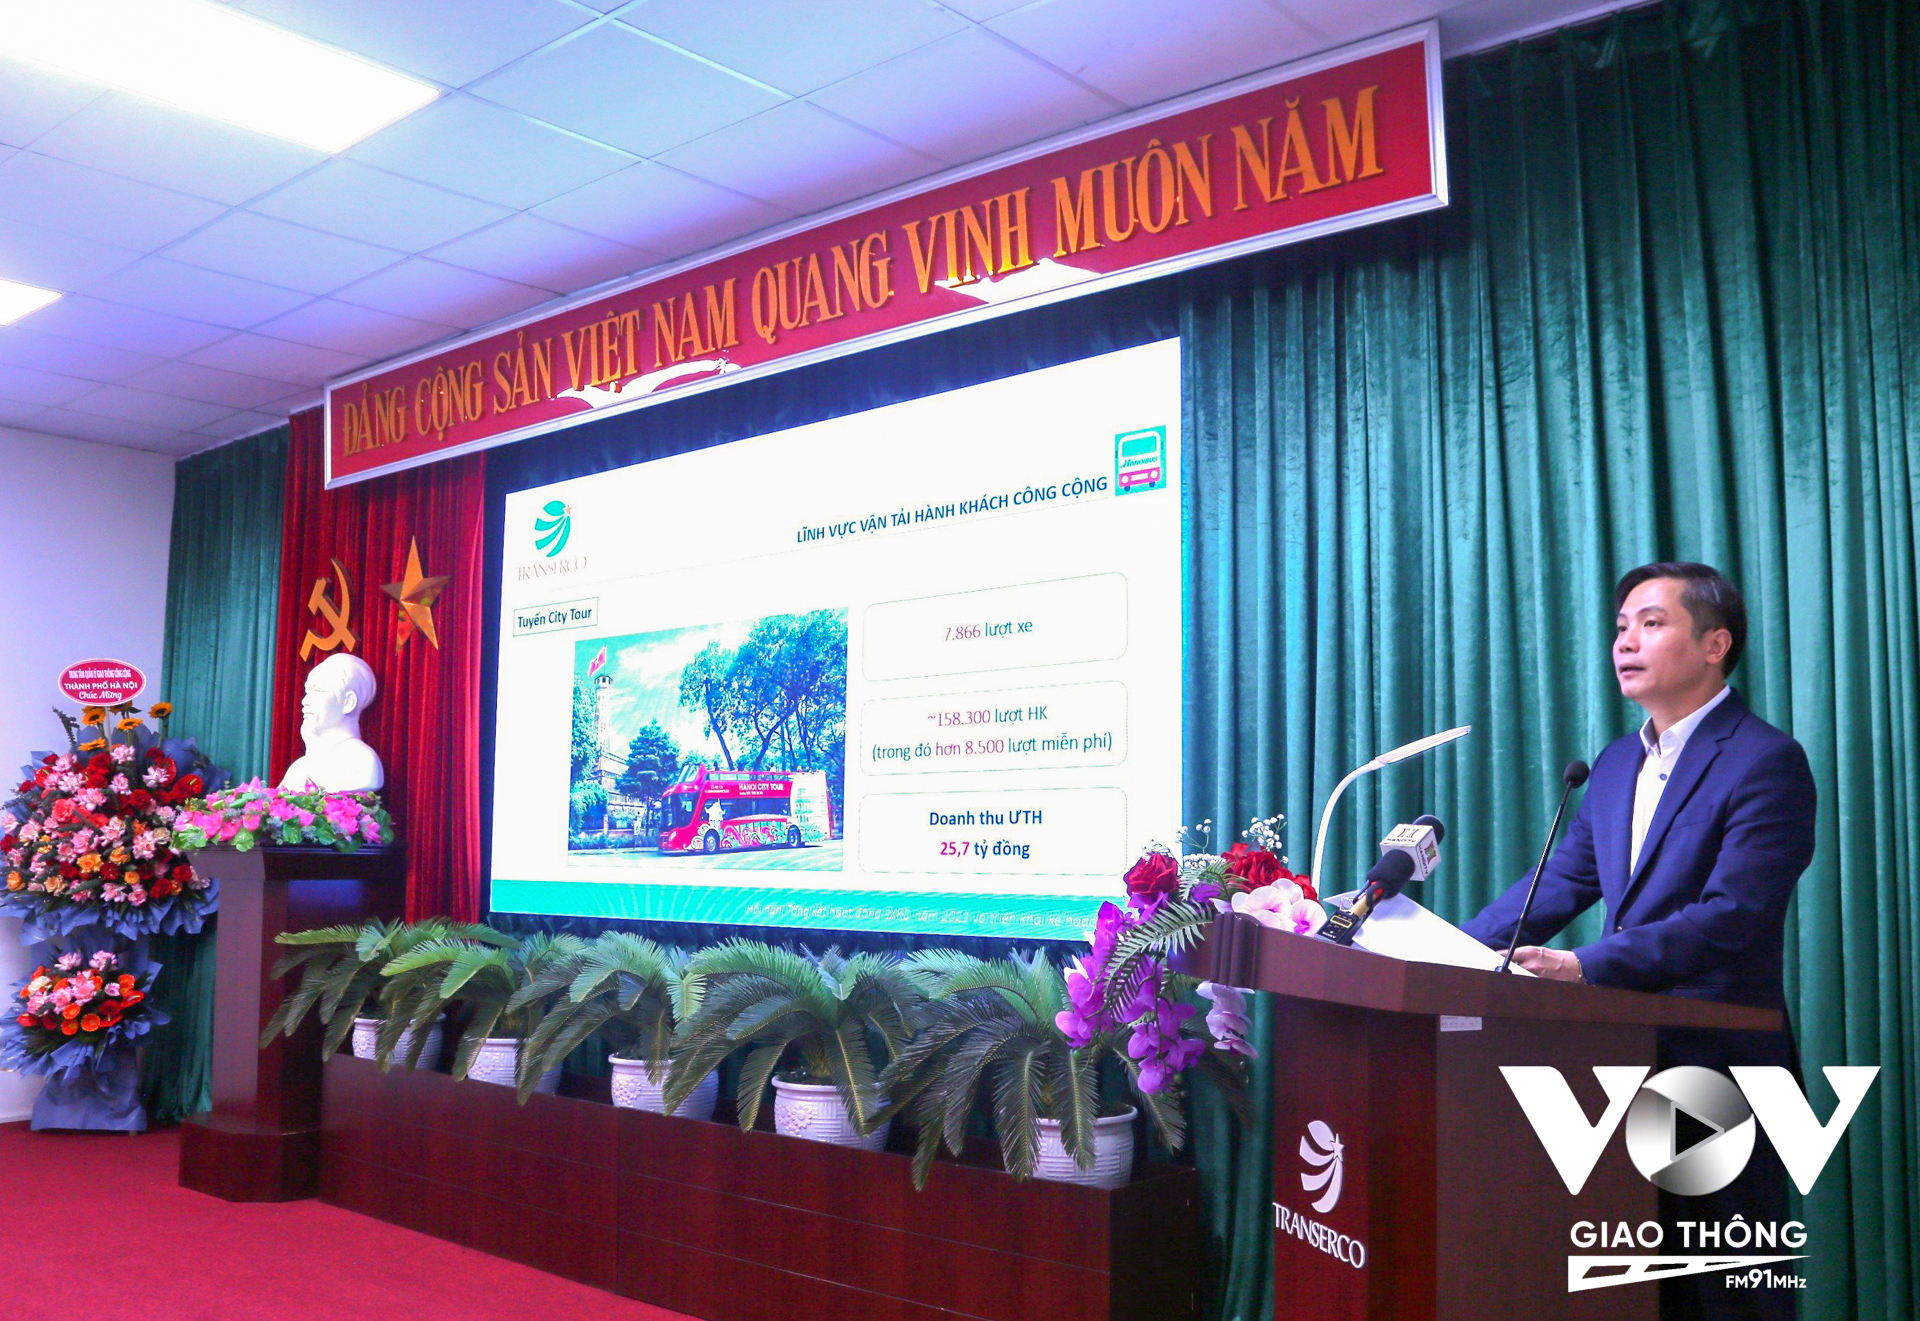 Ông Nguyễn Thanh Nam - Tổng Giám đốc Transerco đã trình bày báo cáo công tác năm.